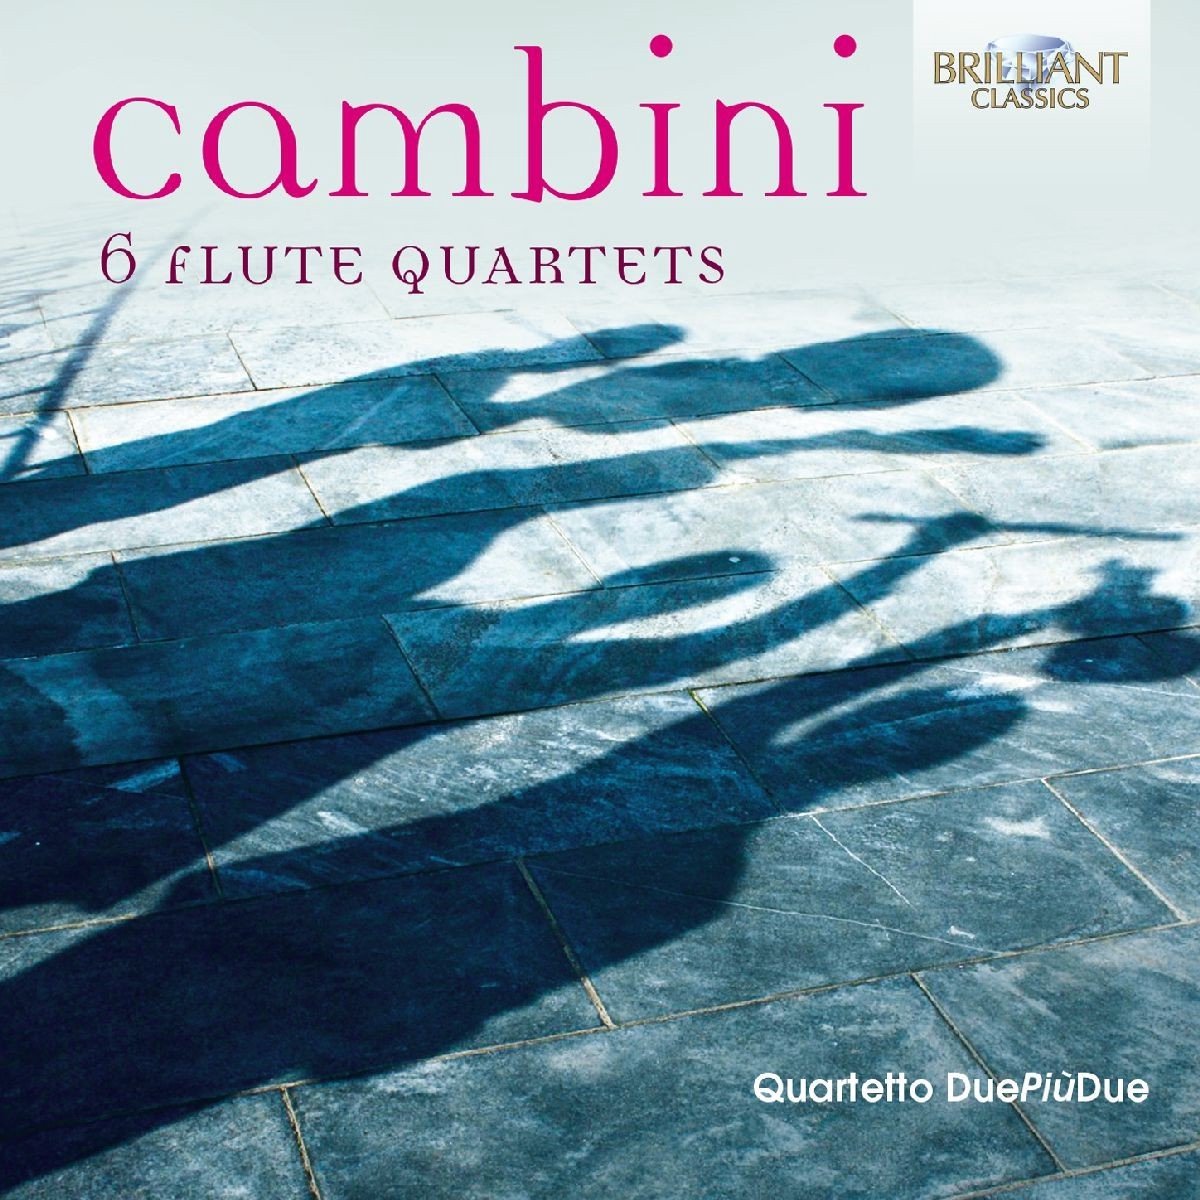 Quartetto DuePiùDue - Cambini: 6 Flute Quartets (CD)